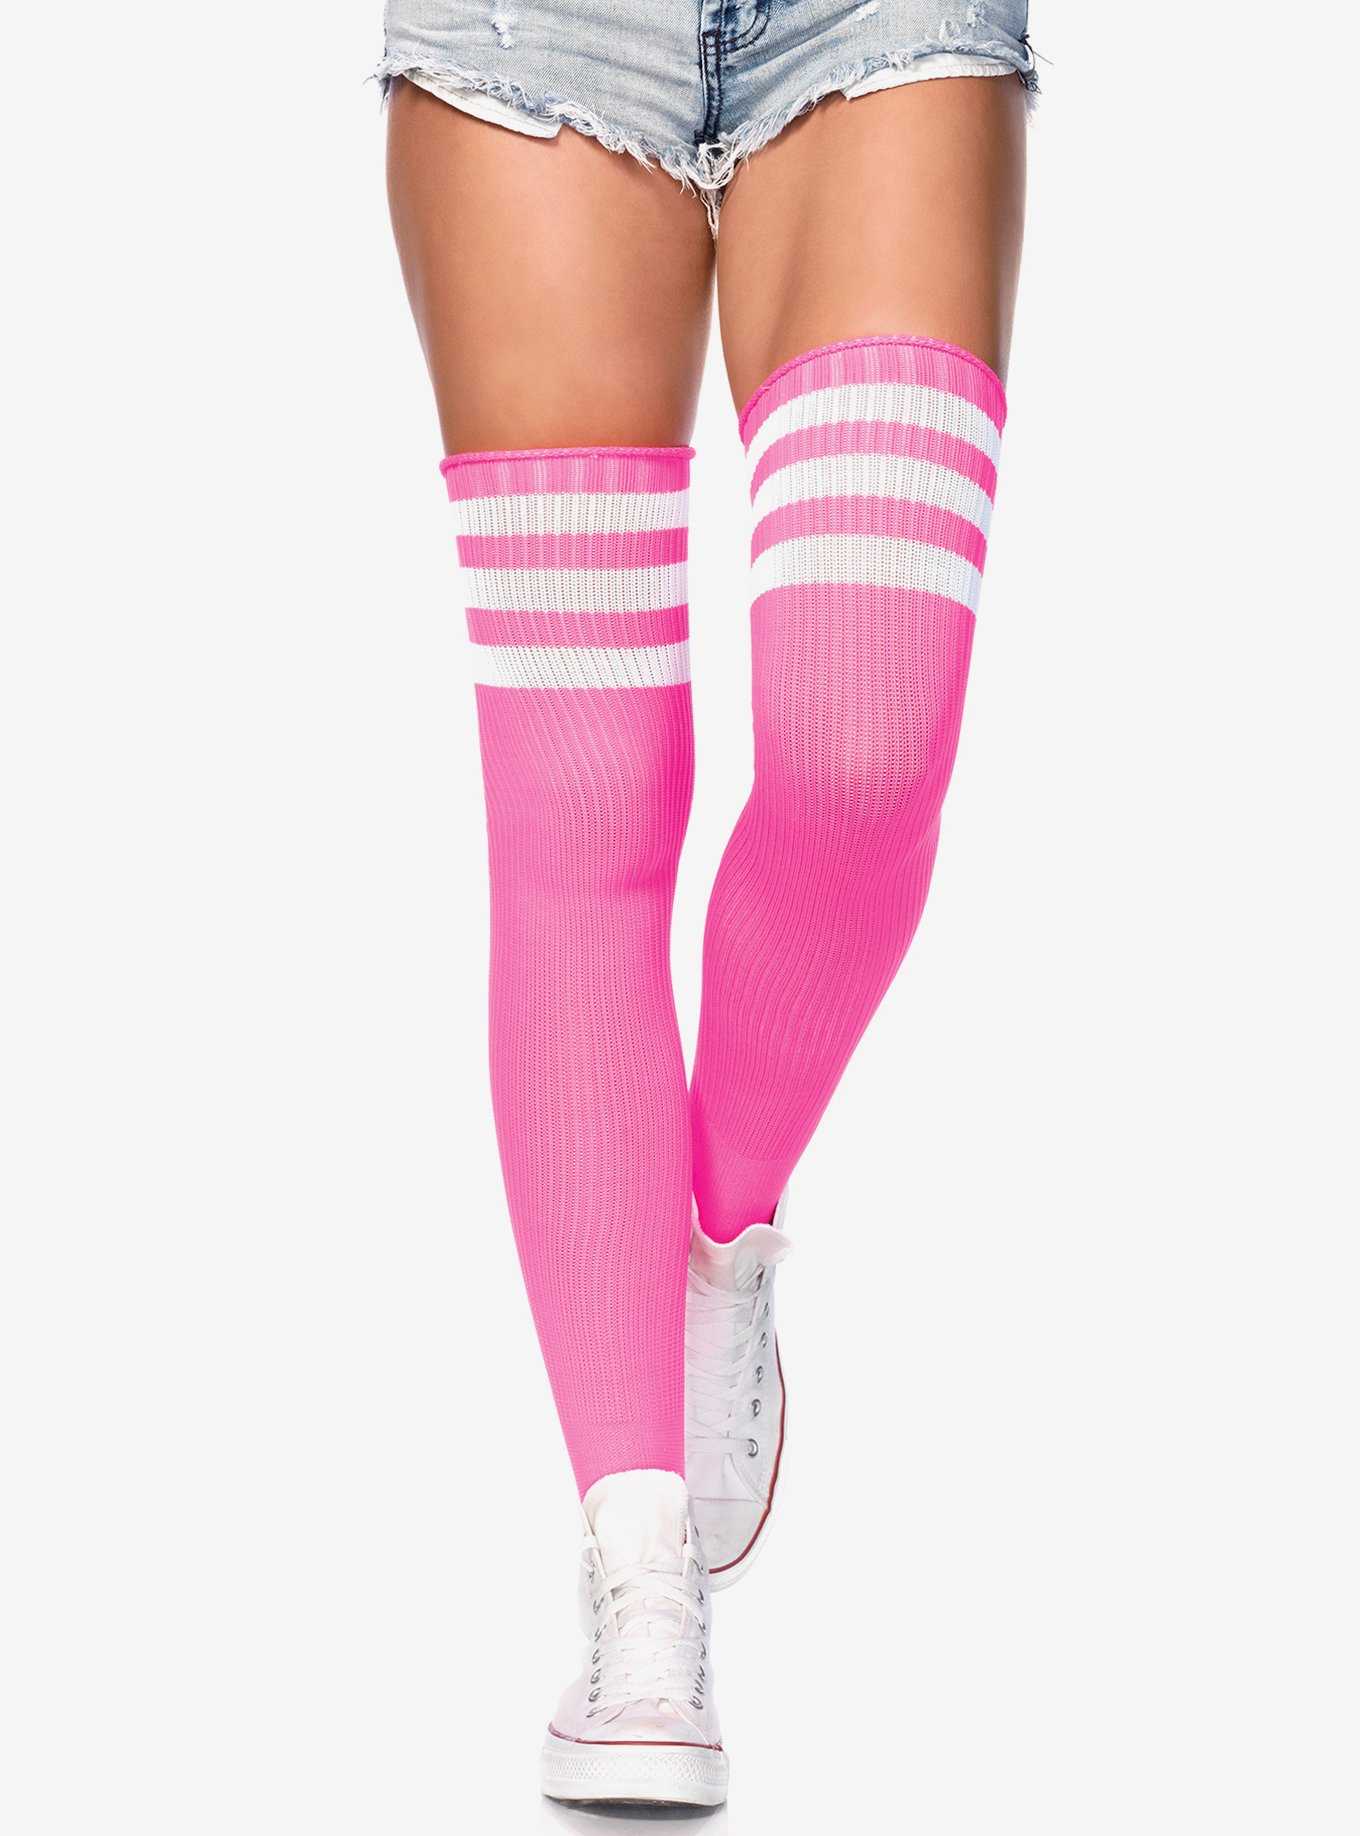 Pink Argyle Skull Over-The-Knee Socks, Hot Topic